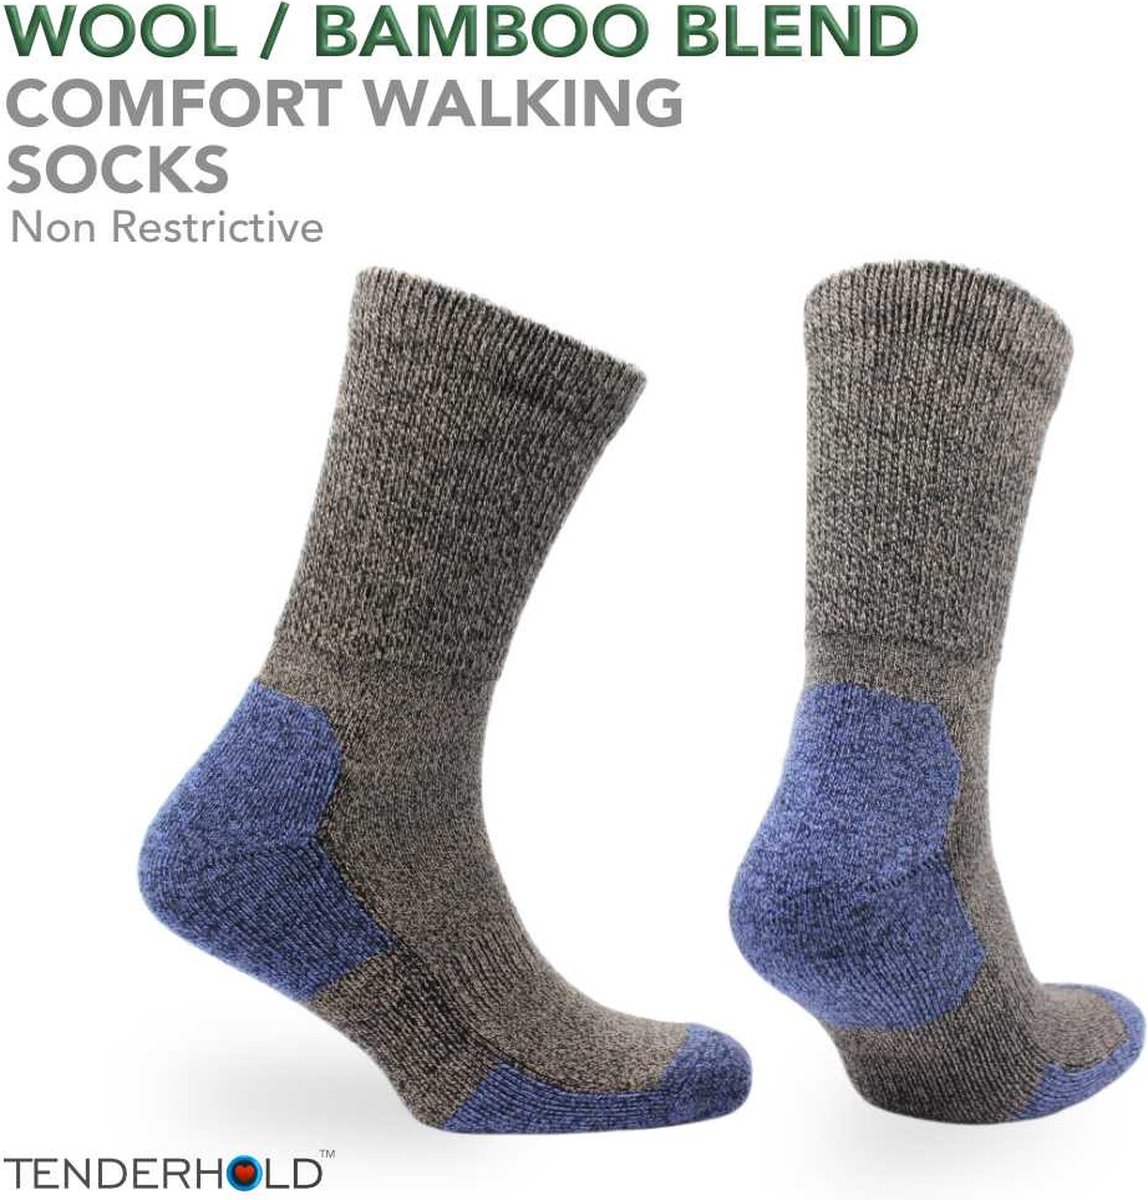 Norfolk Wandelsokken - Merino wol en Bamboe mix Tenderhold, Outdoor Zacht en Warme Sokken met Demping - Merino wollen sokken - Bruin - Maat 39-42 - Alfie